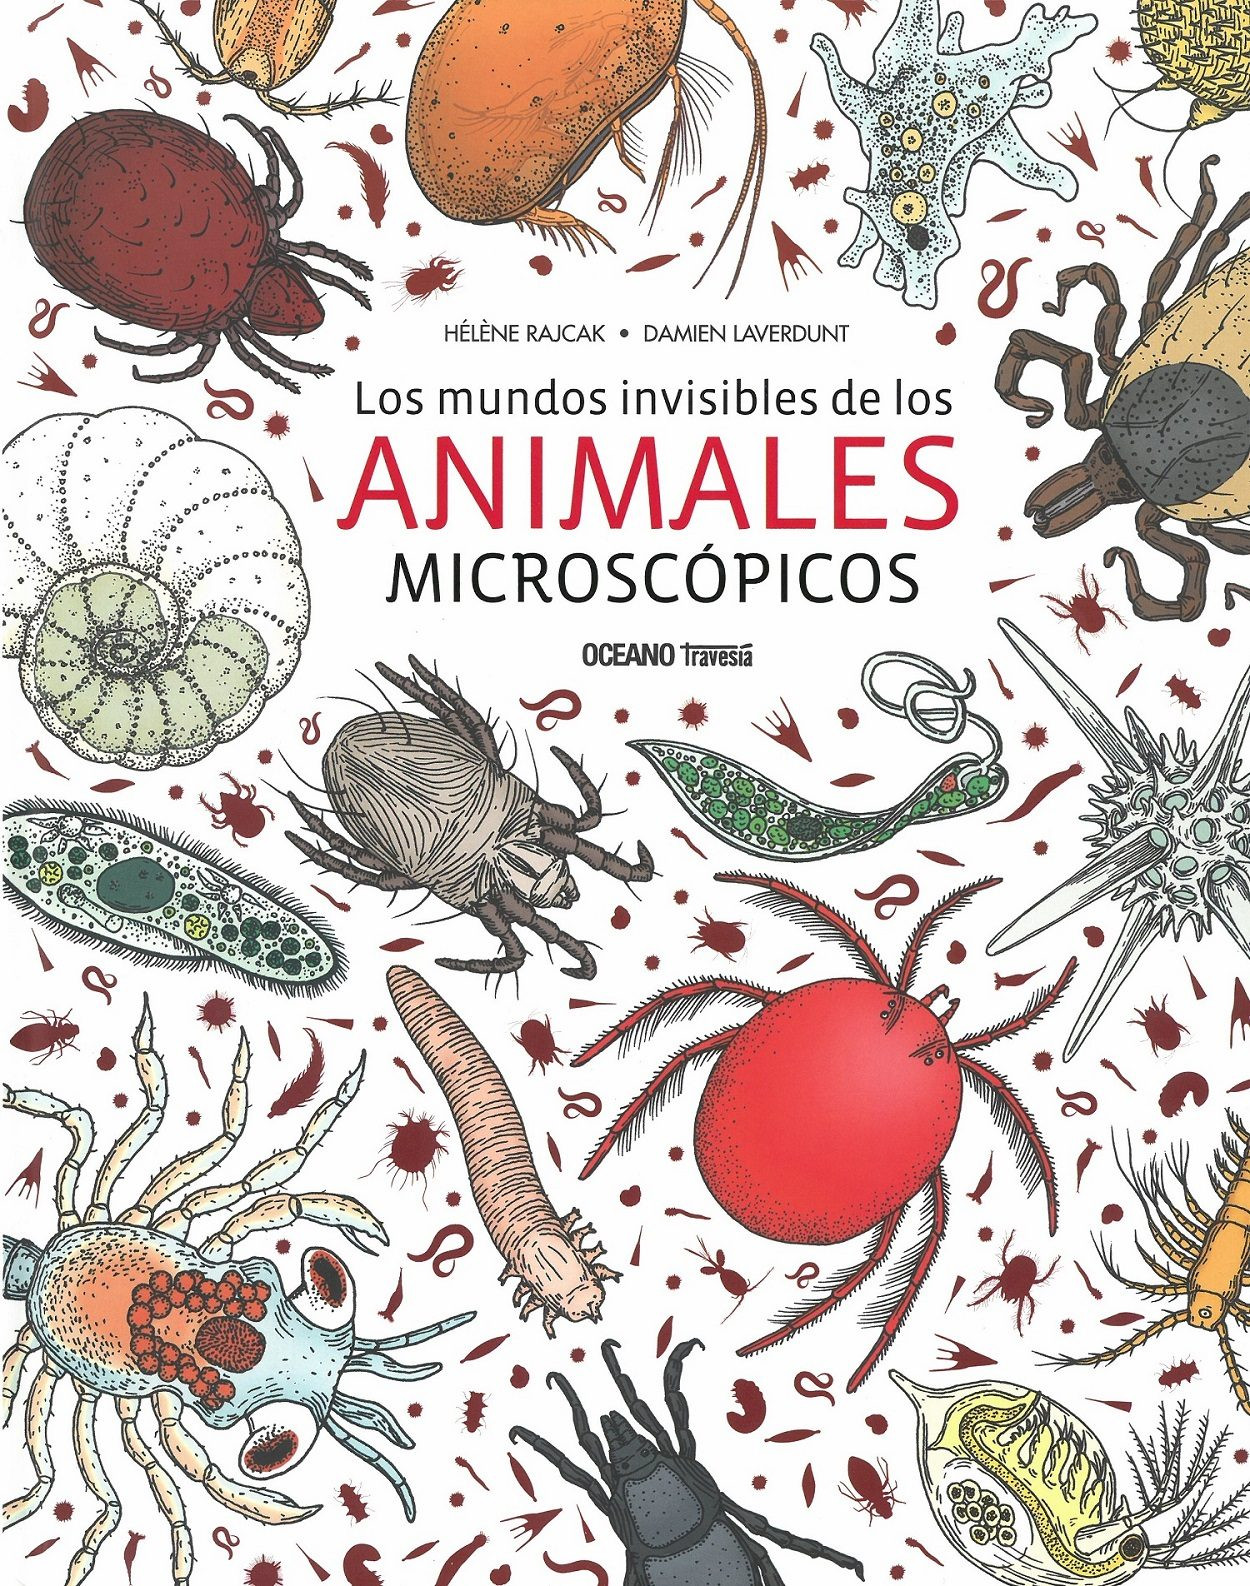 Imagen Los mundos invisibles de los animales microscópicos/ Hélene Rajcak - Damien Laverdunt